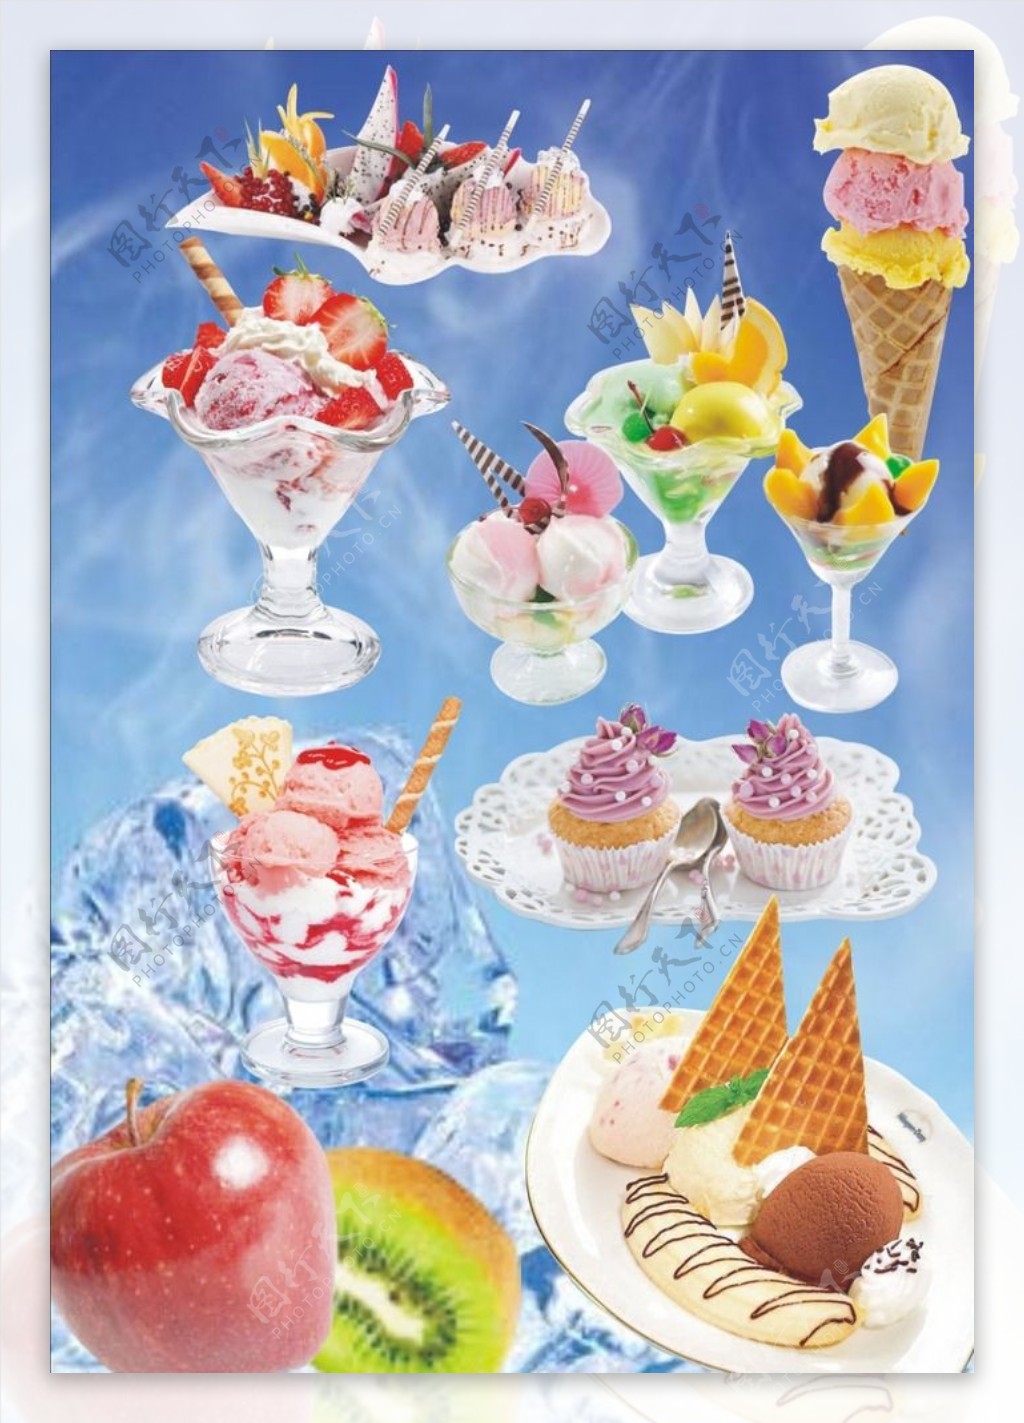 花样式冰淇淋图片